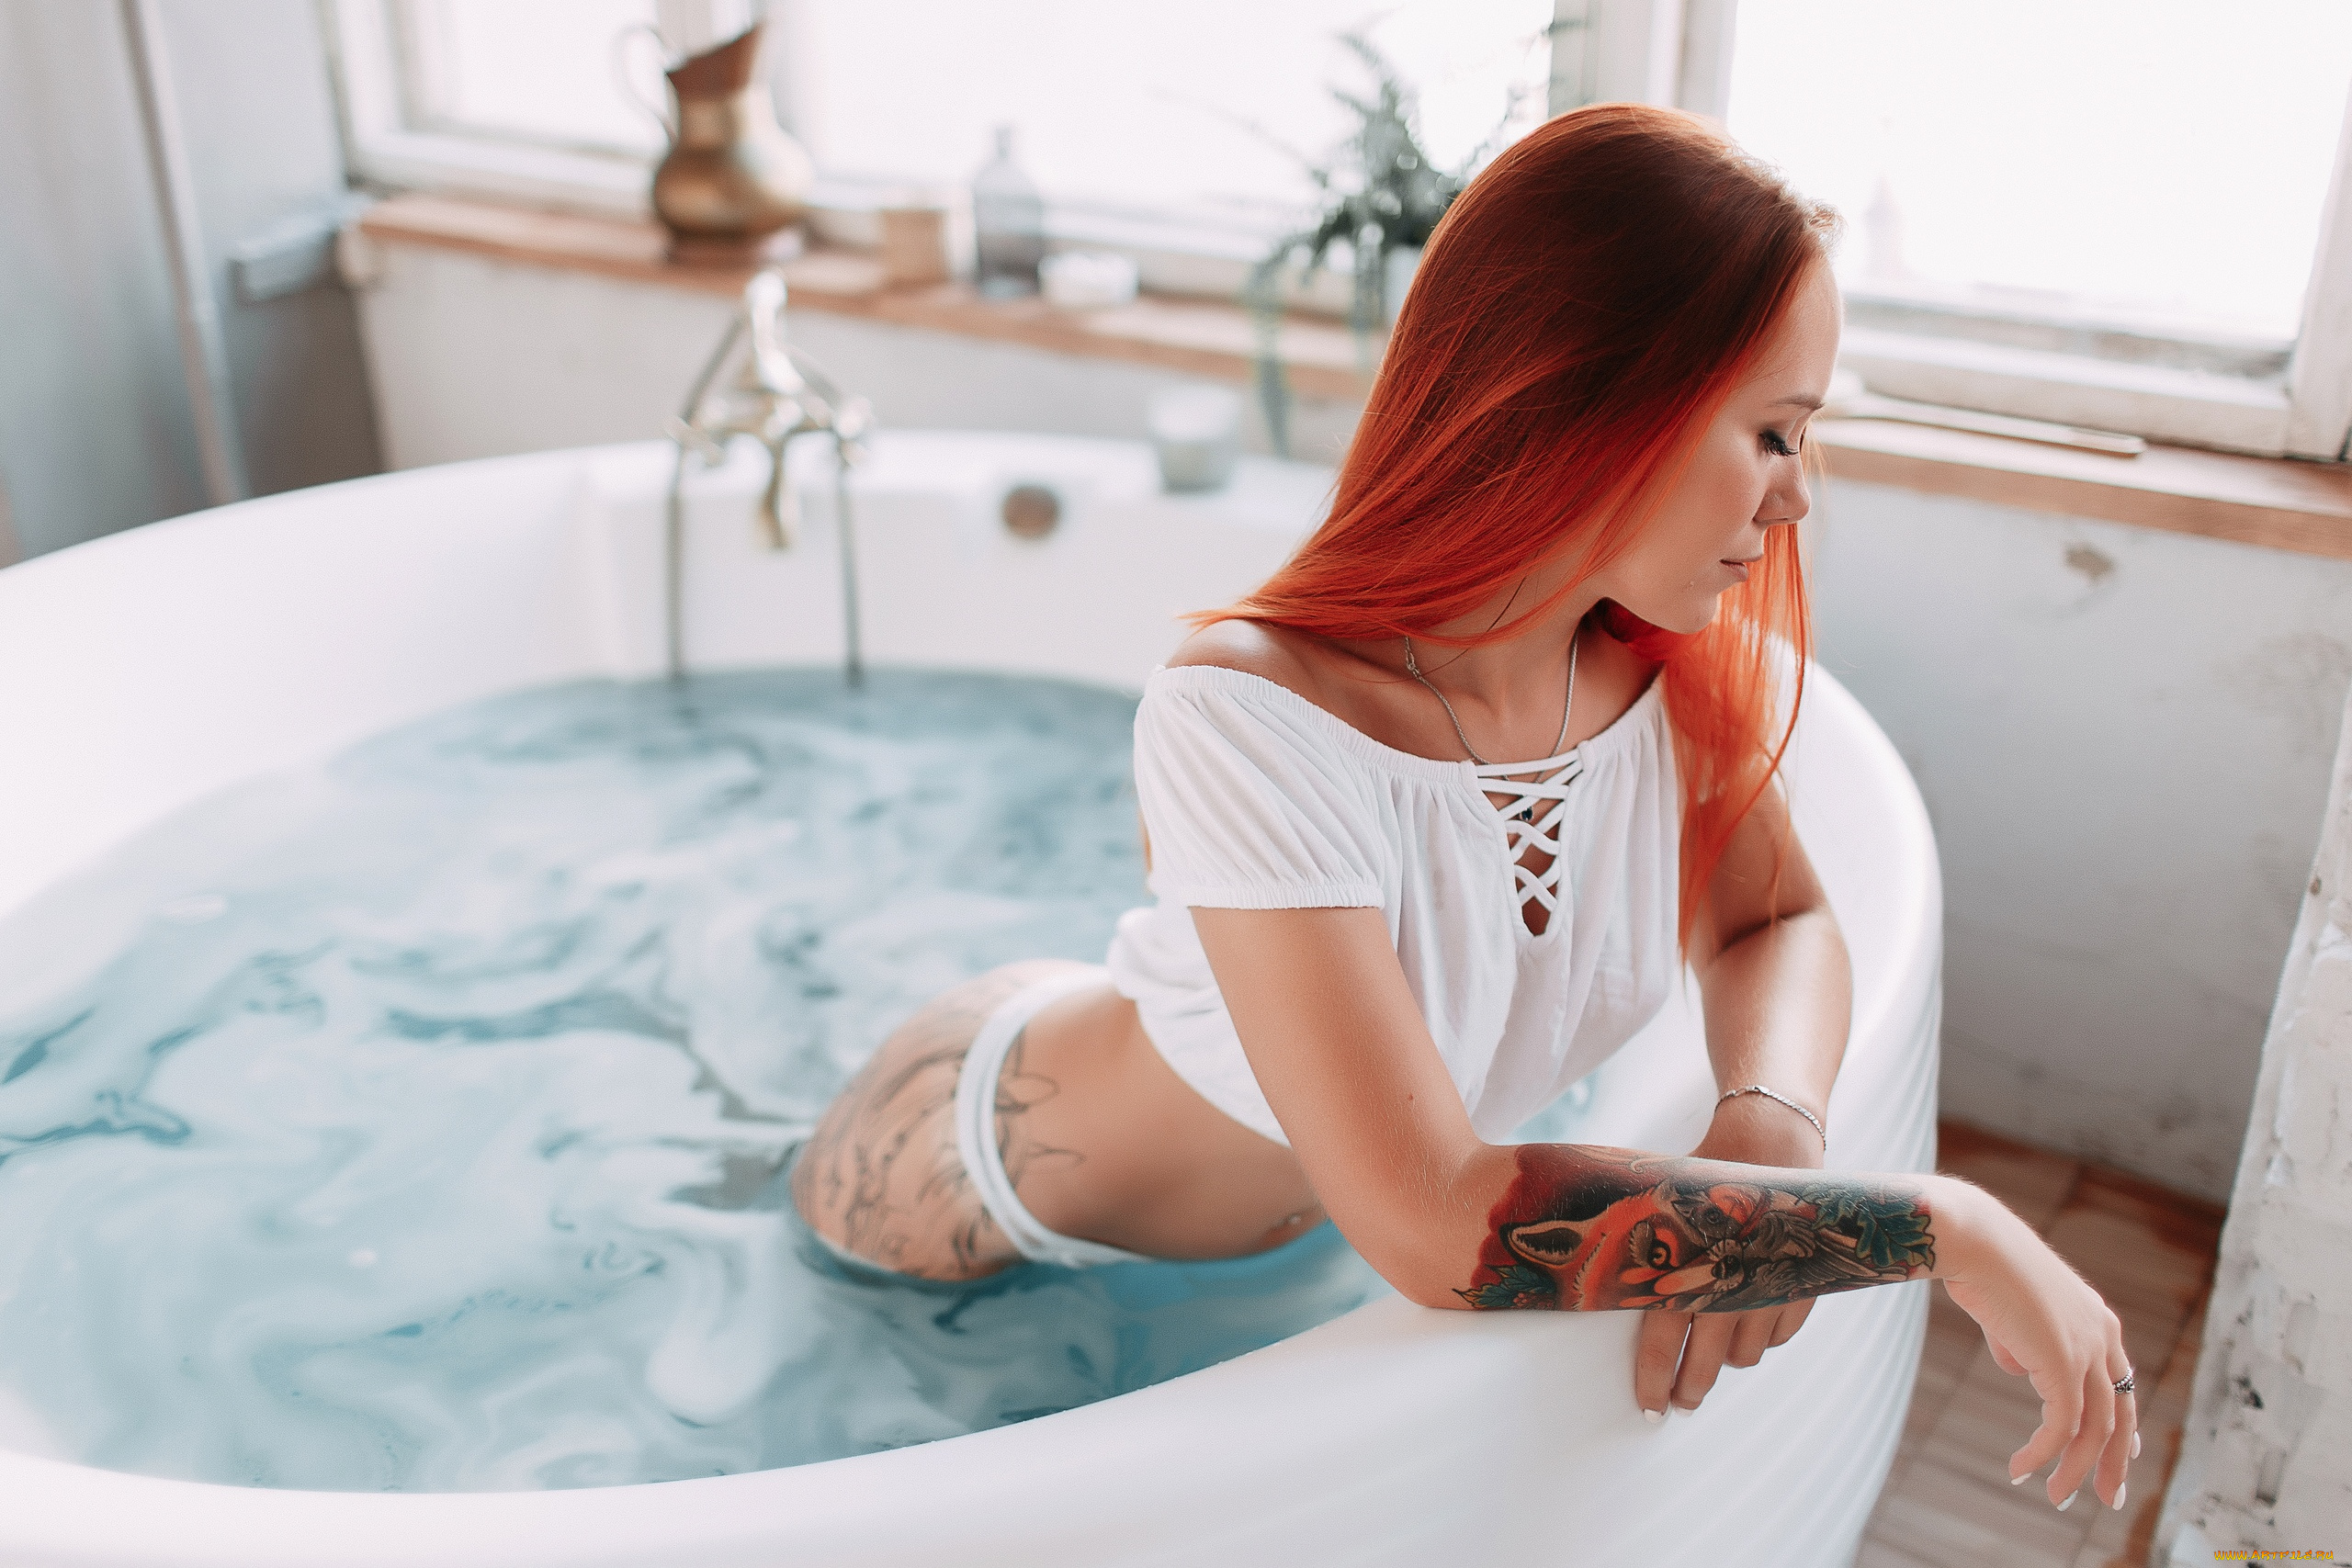 Татуированная китаянка купается в ванне и пользуется секс игрушкой